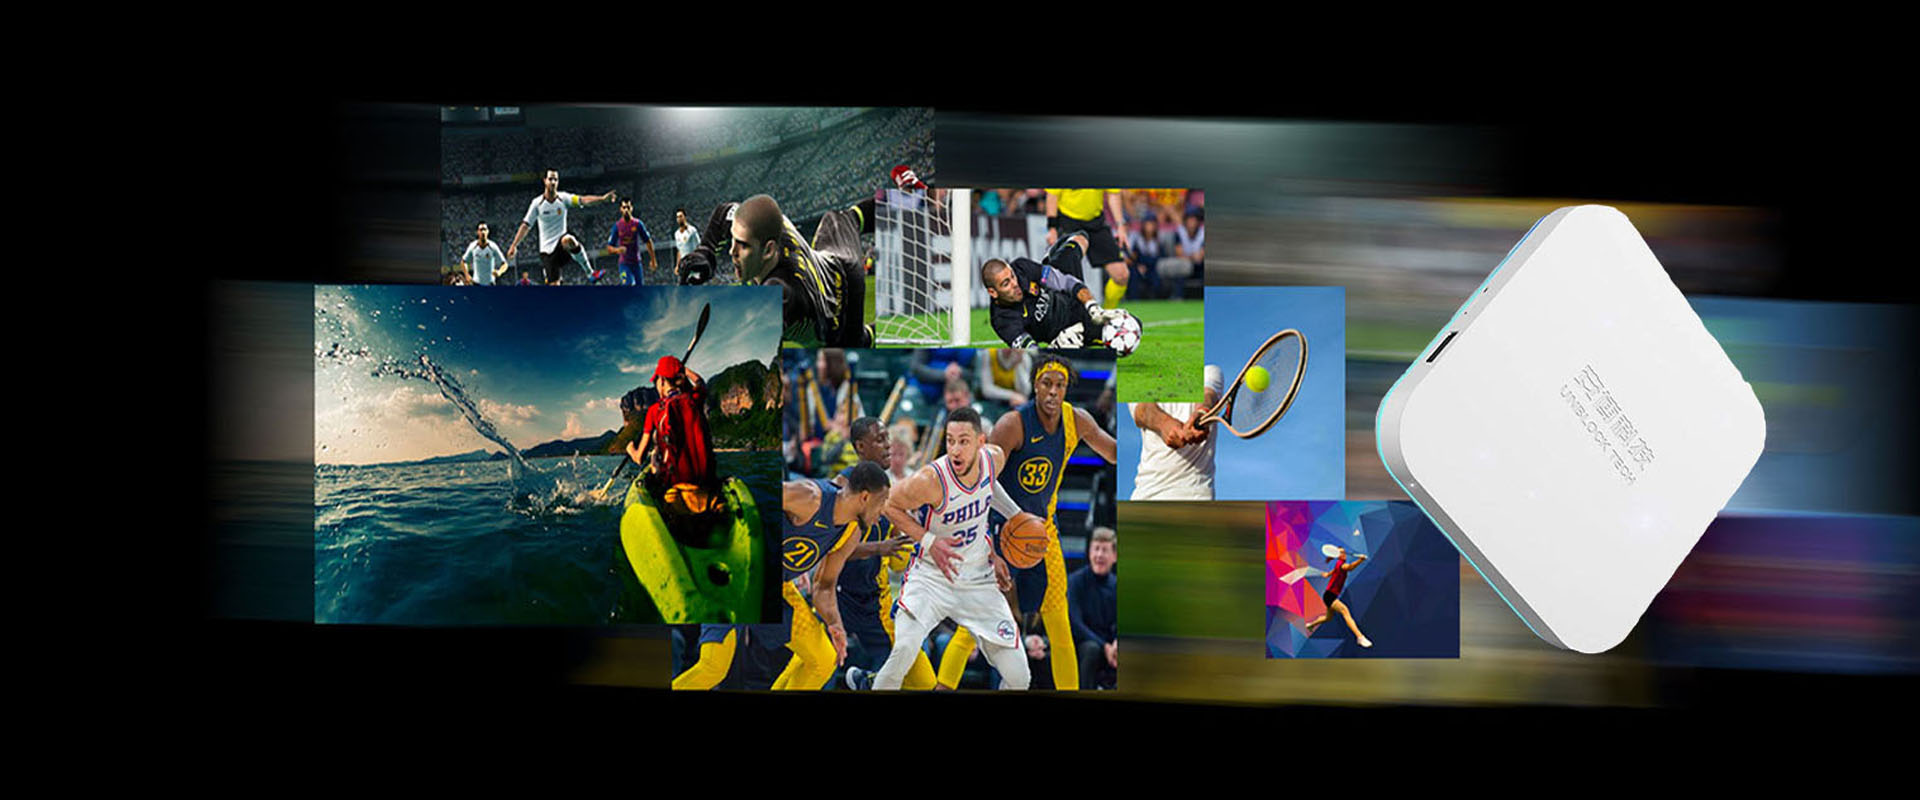 UNBLOCK TECH UBOX8 - Sports TV Box na Iniakma Para sa Mga Tagahanga ng Sports